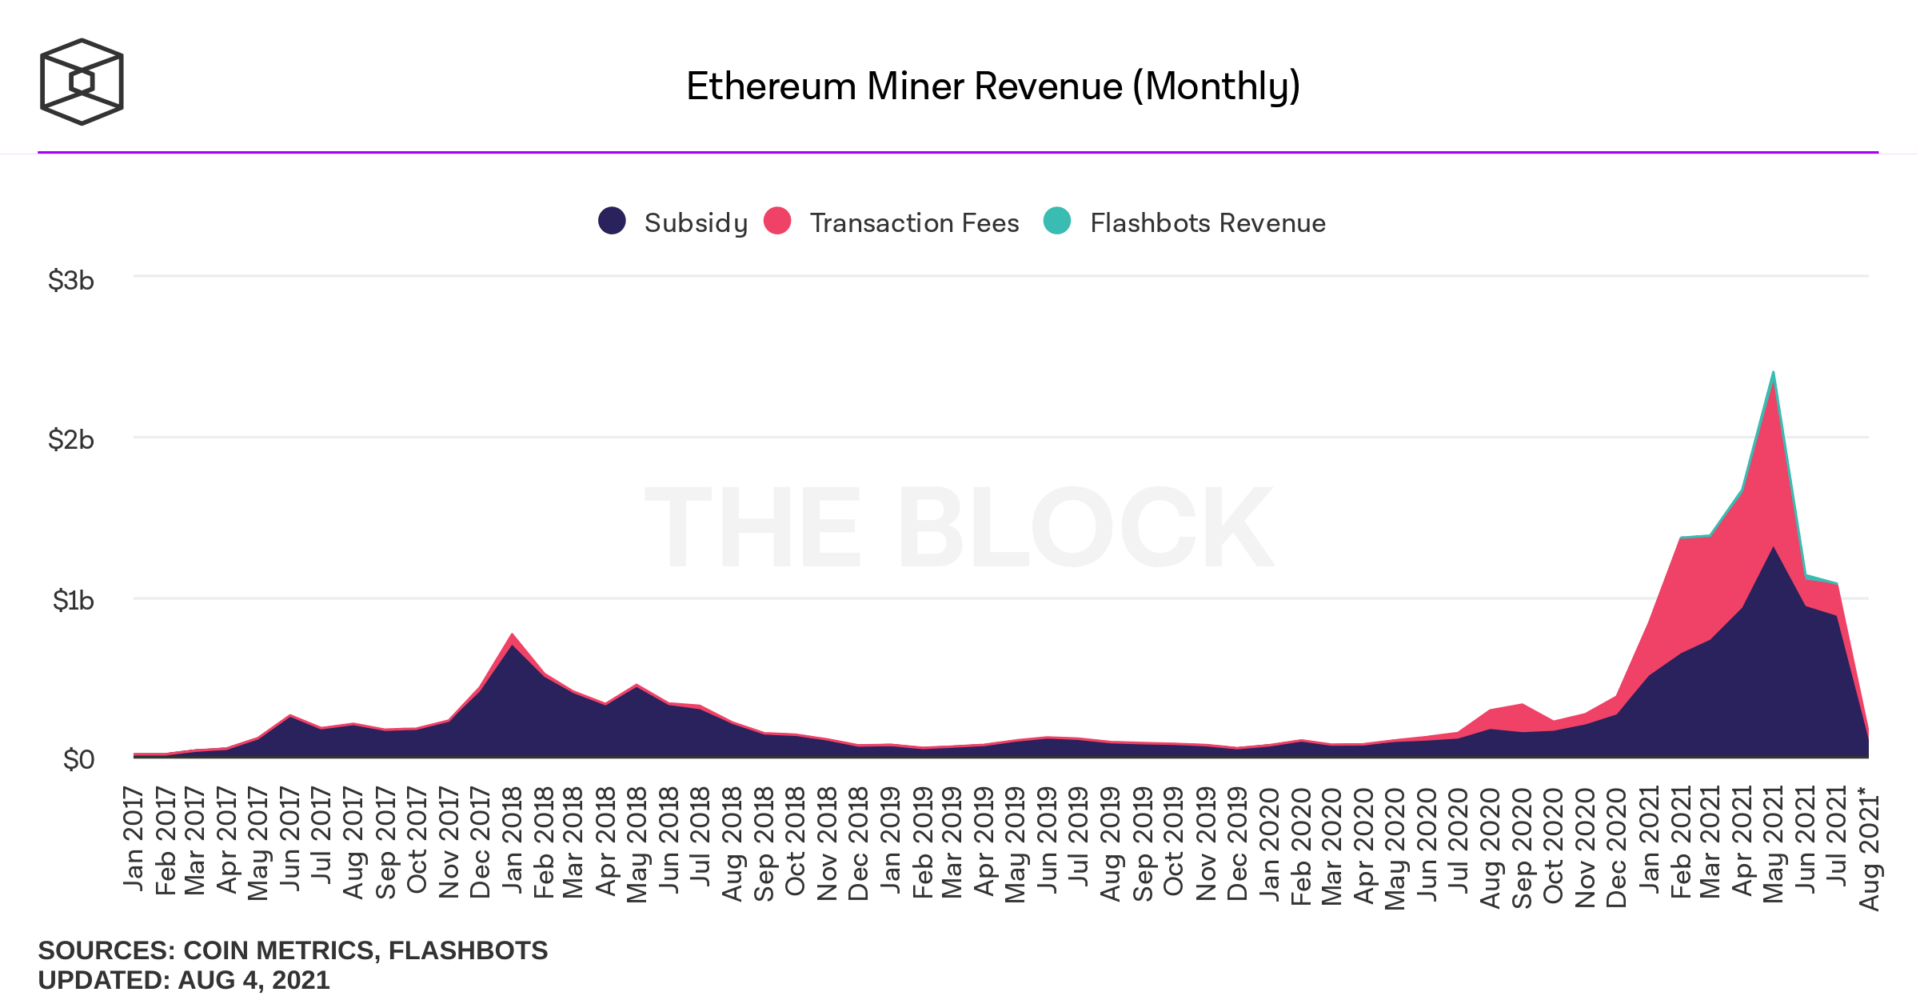 Revenus totaux (récompenses de blocs + frais de transactions) des mineurs d'ethers, montrant un dépassement sur 3 mois consécutifs de ceux du réseau Bitcoin